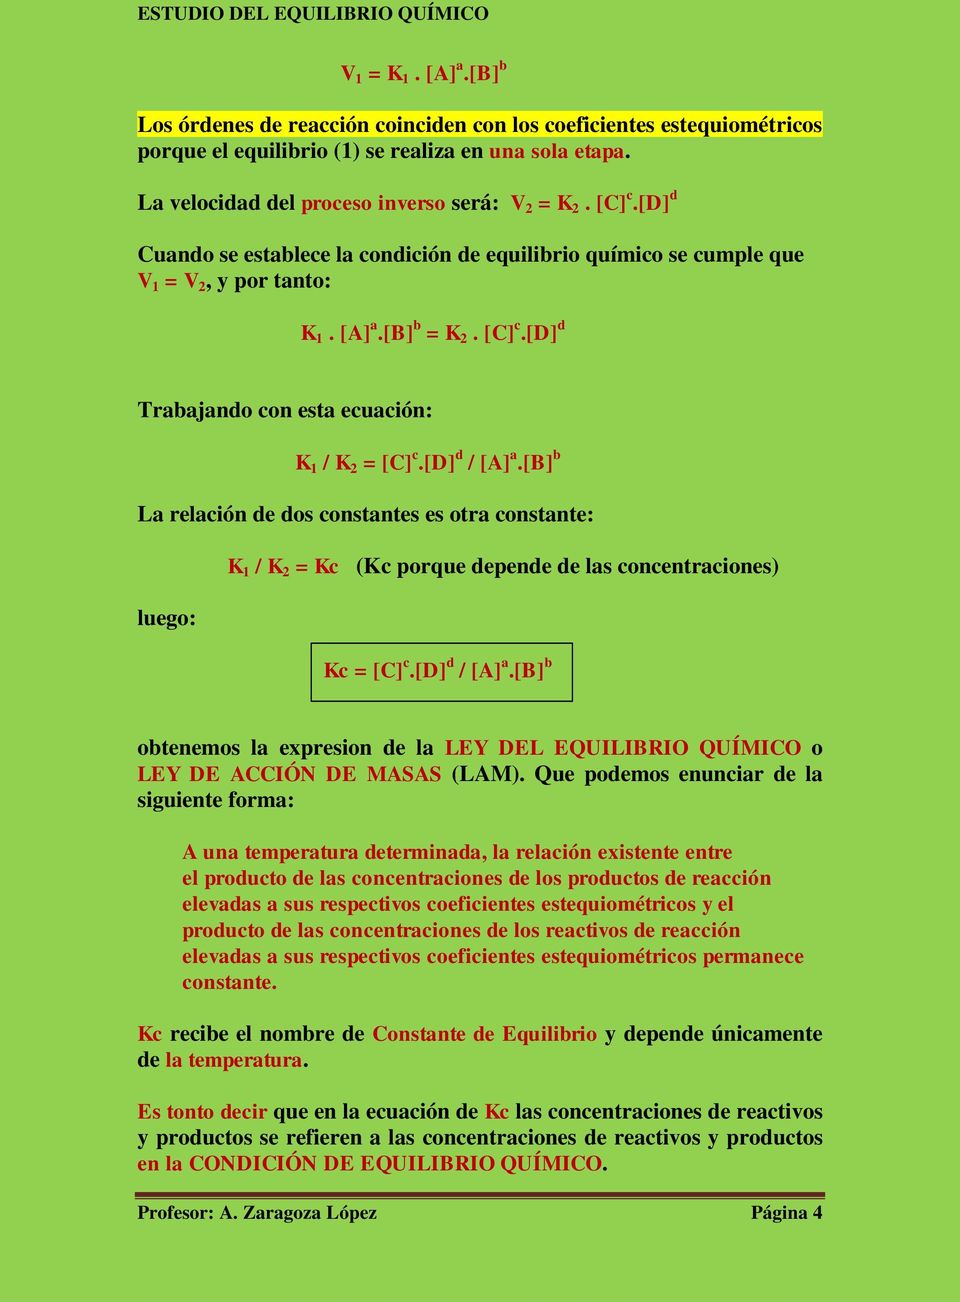 [d] d / [A] a.[b] b La relación de dos constantes es otra constante: K 1 / K 2 = Kc (Kc porque depende de las concentraciones) luego: Kc = [C] c.[d] d / [A] a.[b] b obtenemos la expresion de la LEY DEL EQUILIBRIO QUÍMICO o LEY DE ACCIÓN DE MASAS (LAM).